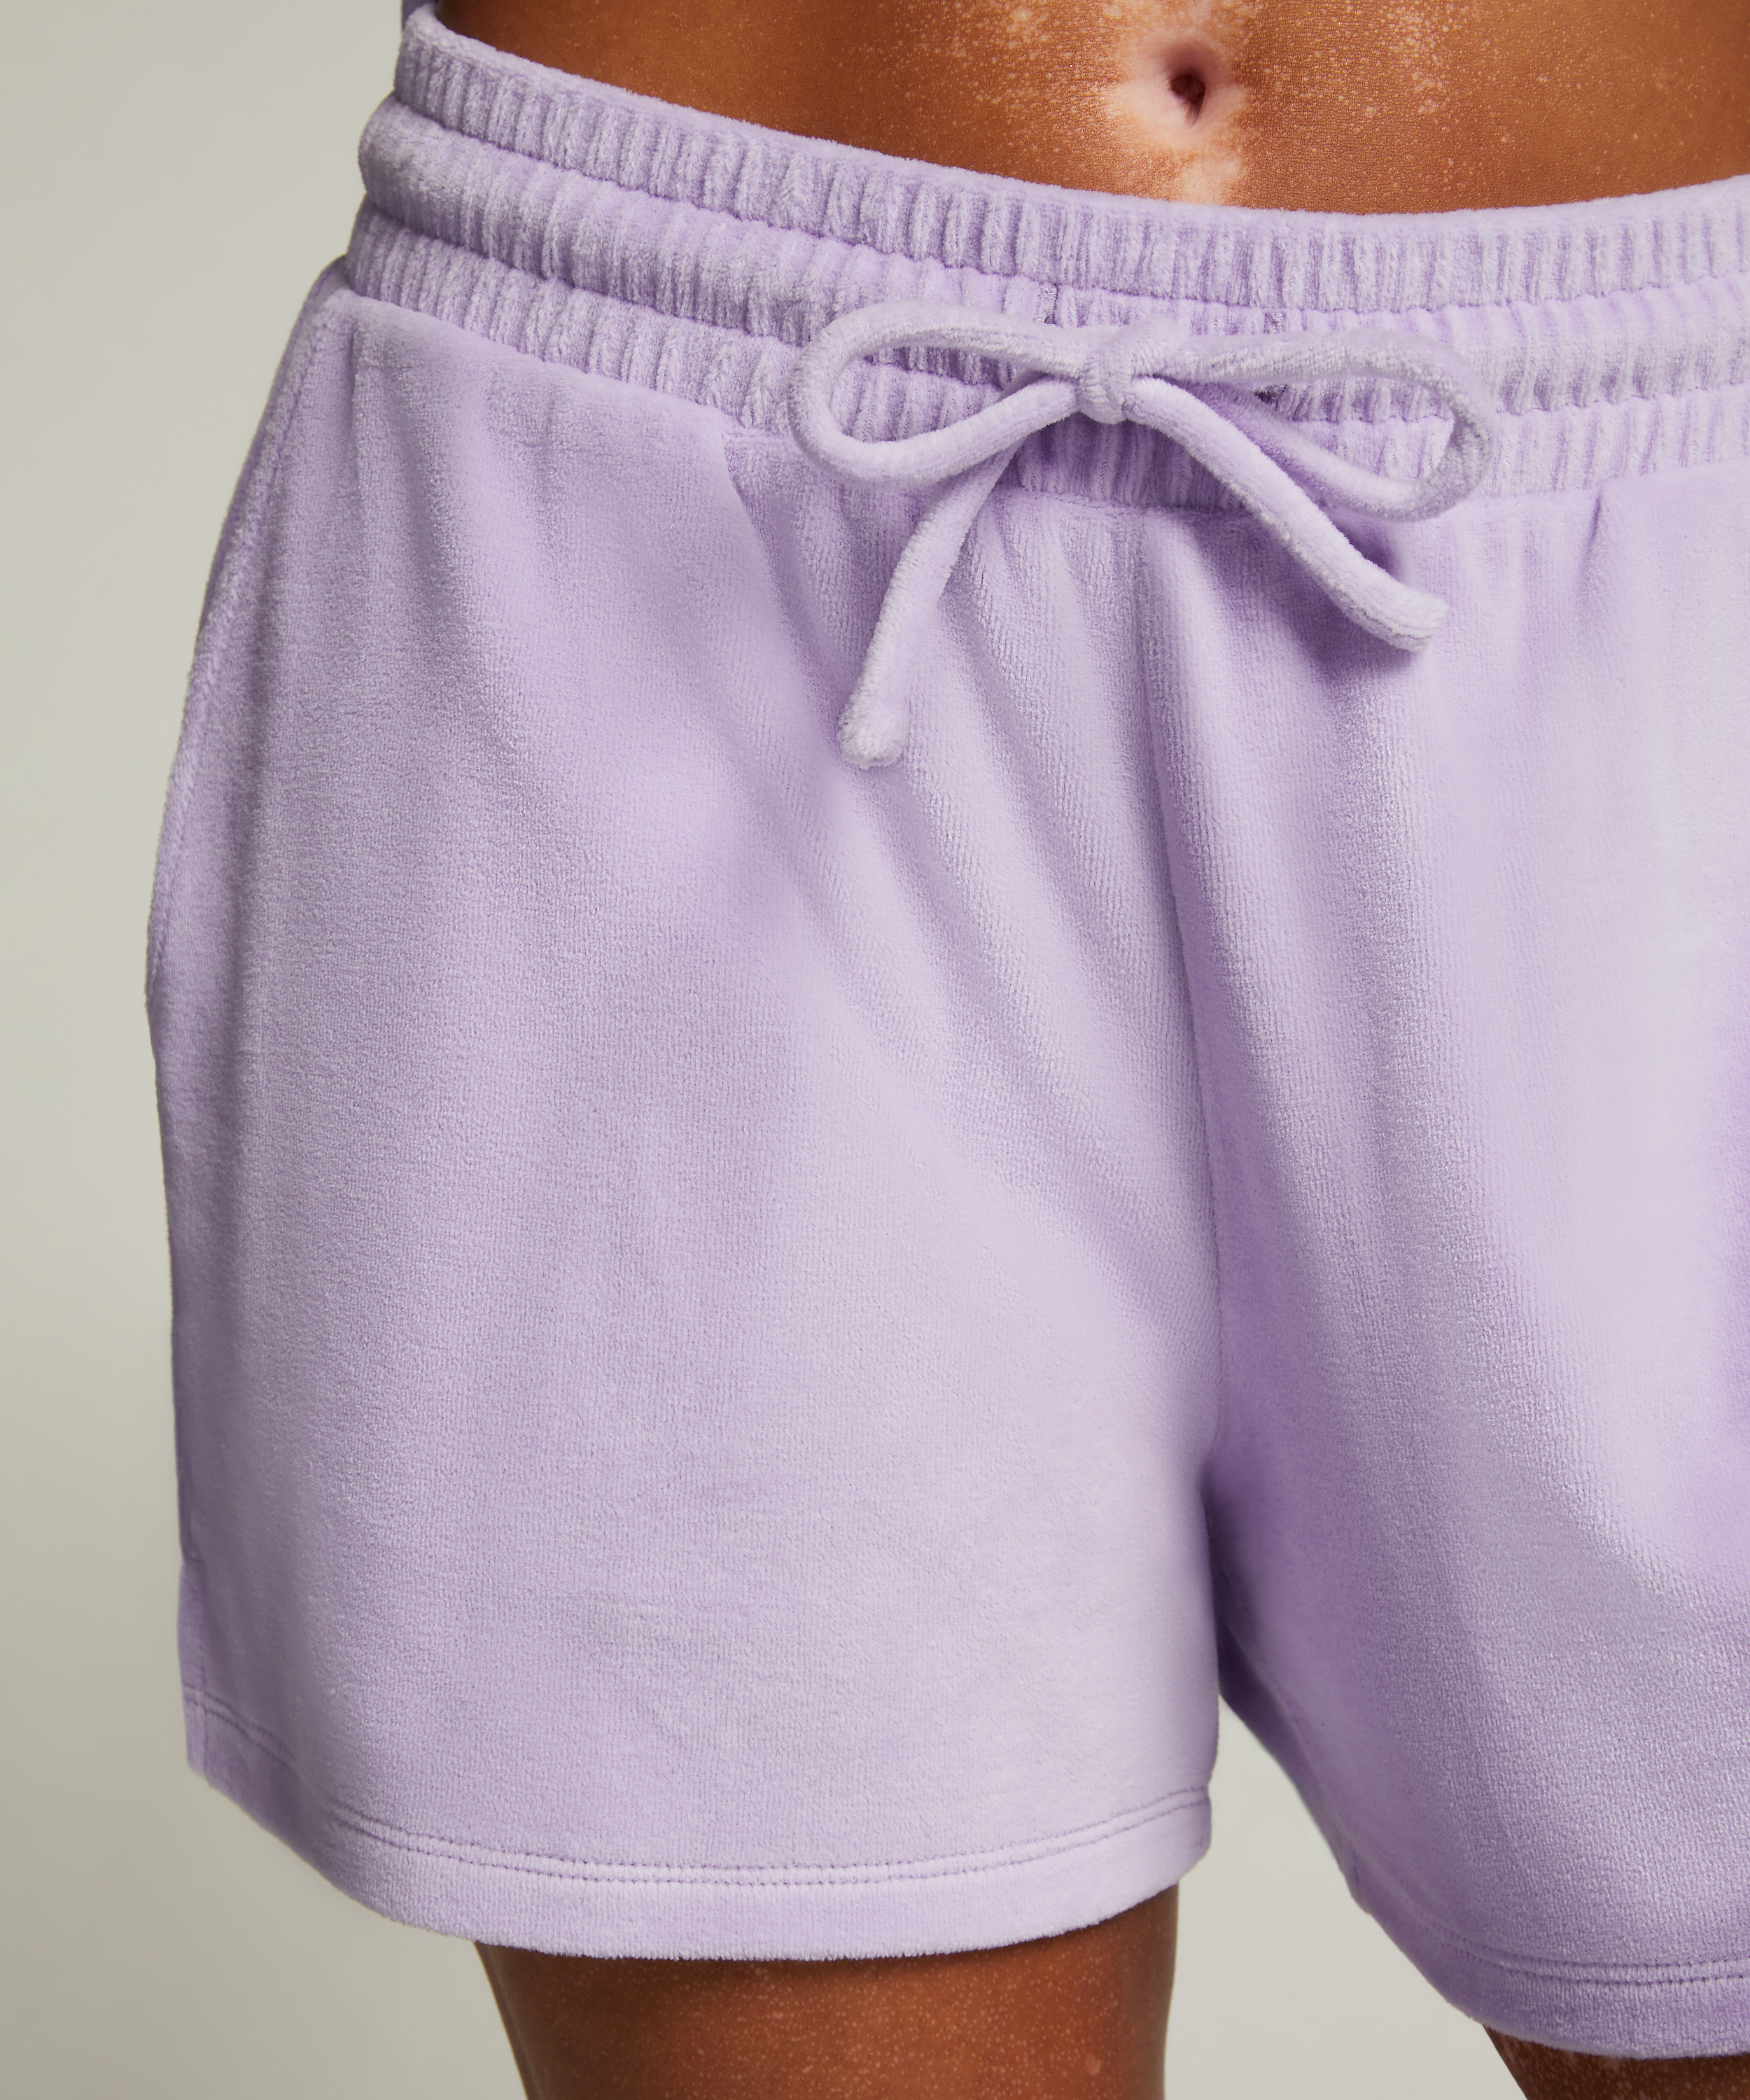 Velours Pocket shorts, Lilla, main